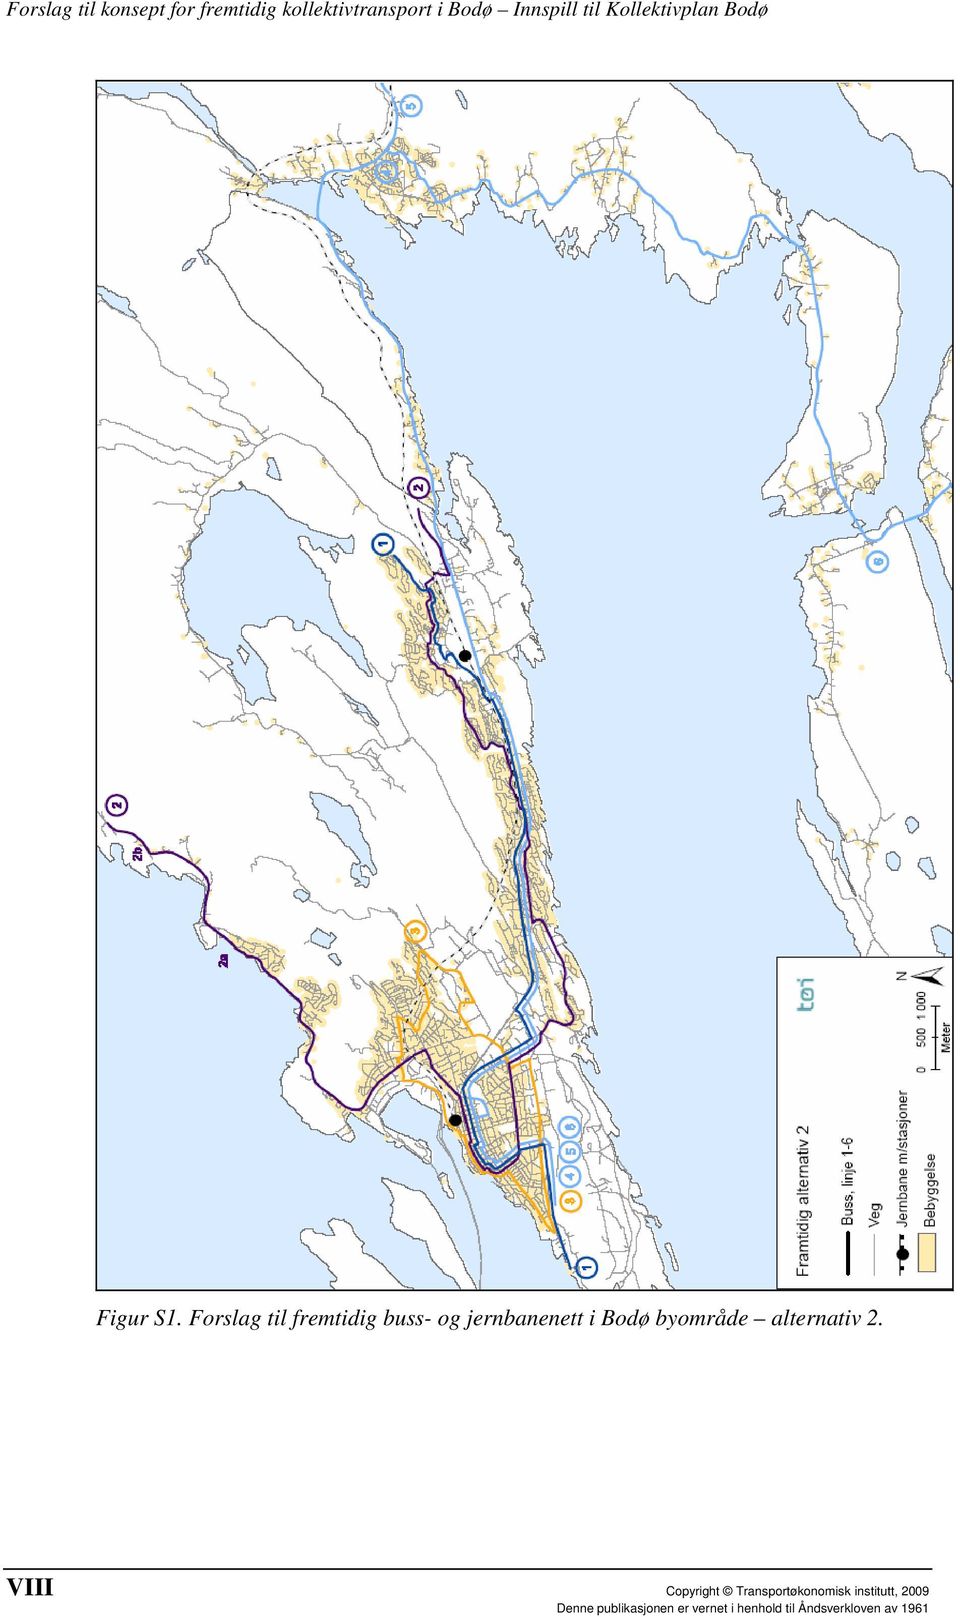 Forslag til fremtidig buss- og jernbanenett i Bodø